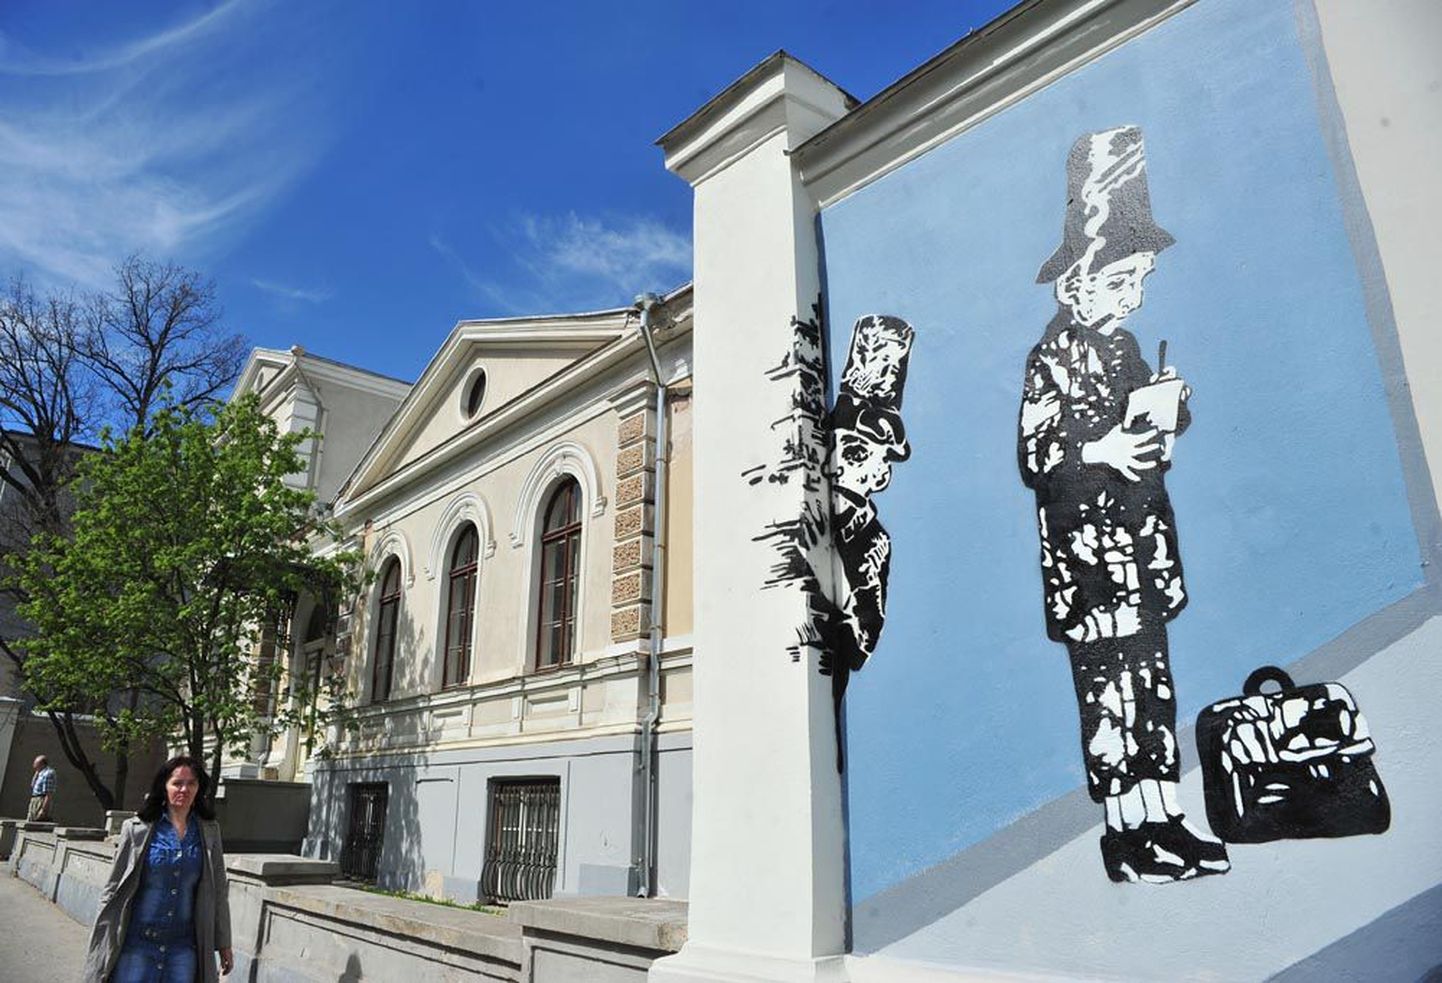 Nii mõnigi Stencibility festivalidel valminud taies on saanud osaks Tartu tänavapildist. Fotol fragment kolme aasta eest tänavakunstnike ühistööna valminud maalingust Tartu kirjandusmaja müüril.